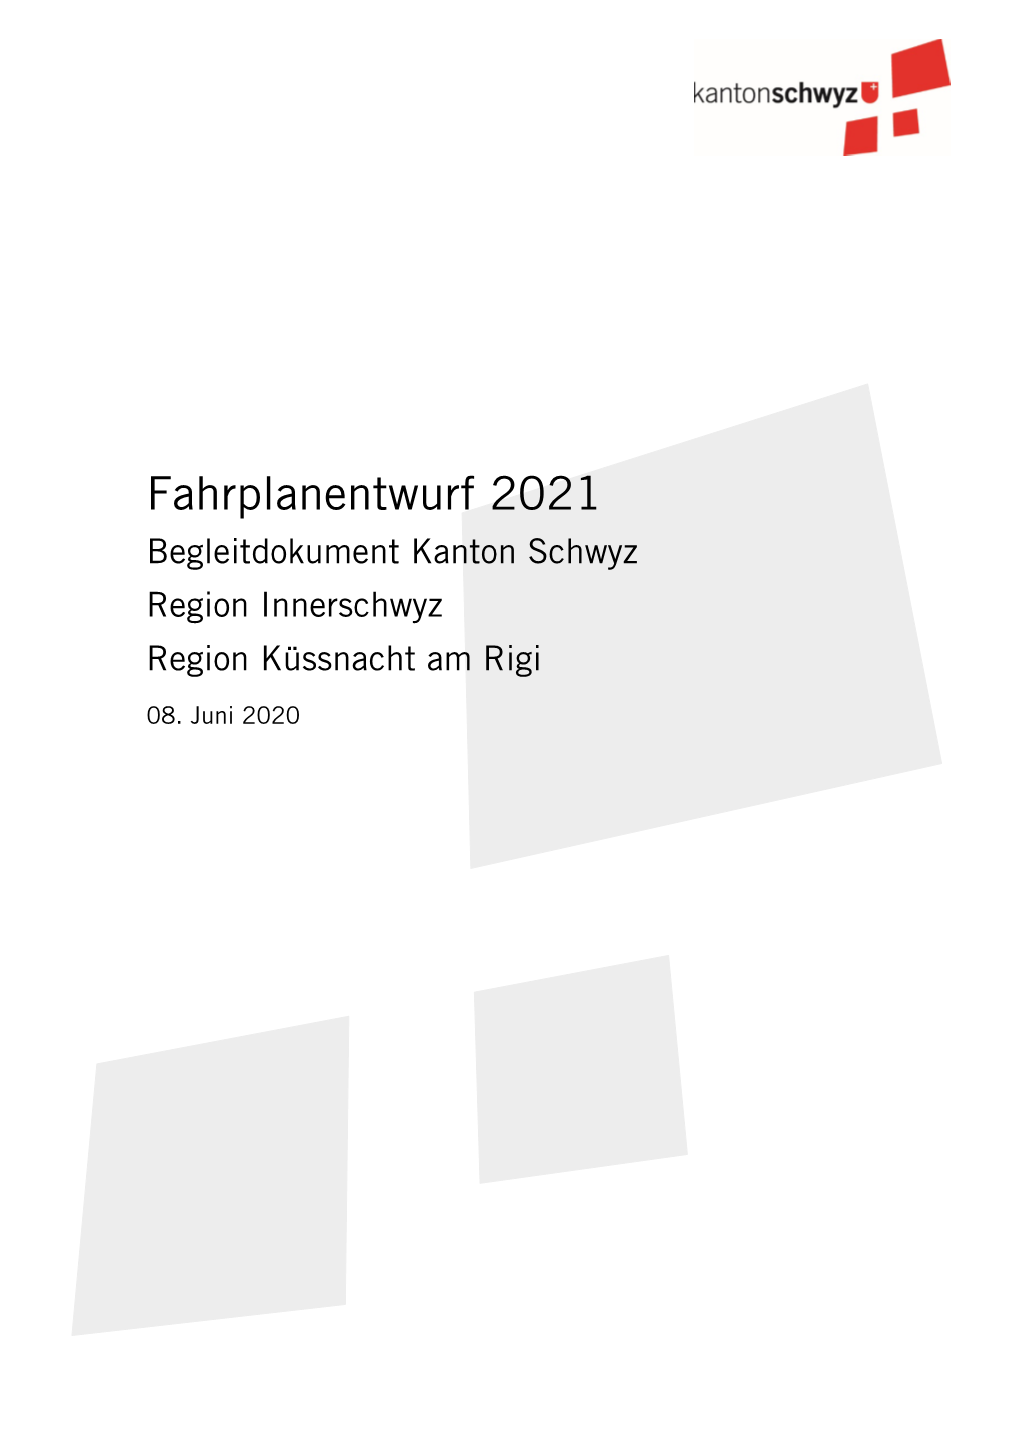 Begleitdokument Kanton Schwyz Zum Fahrplanentwurf 2021